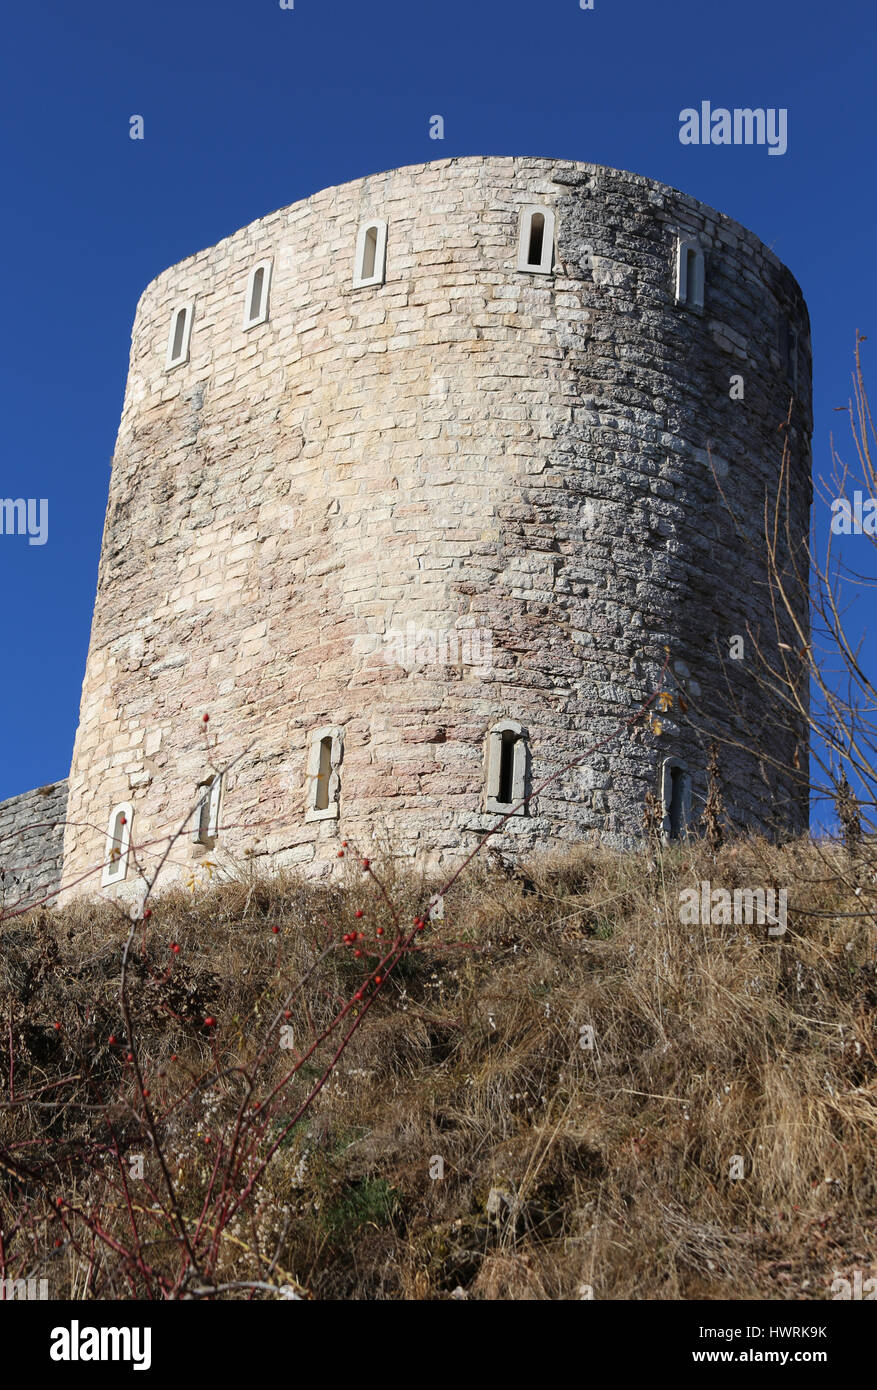 Torre di avvistamento dei ruderi di un antico fortilizio utilizzata dai soldati durante la Prima Guerra Mondiale nei pressi della città di Asiago in Italia Foto Stock